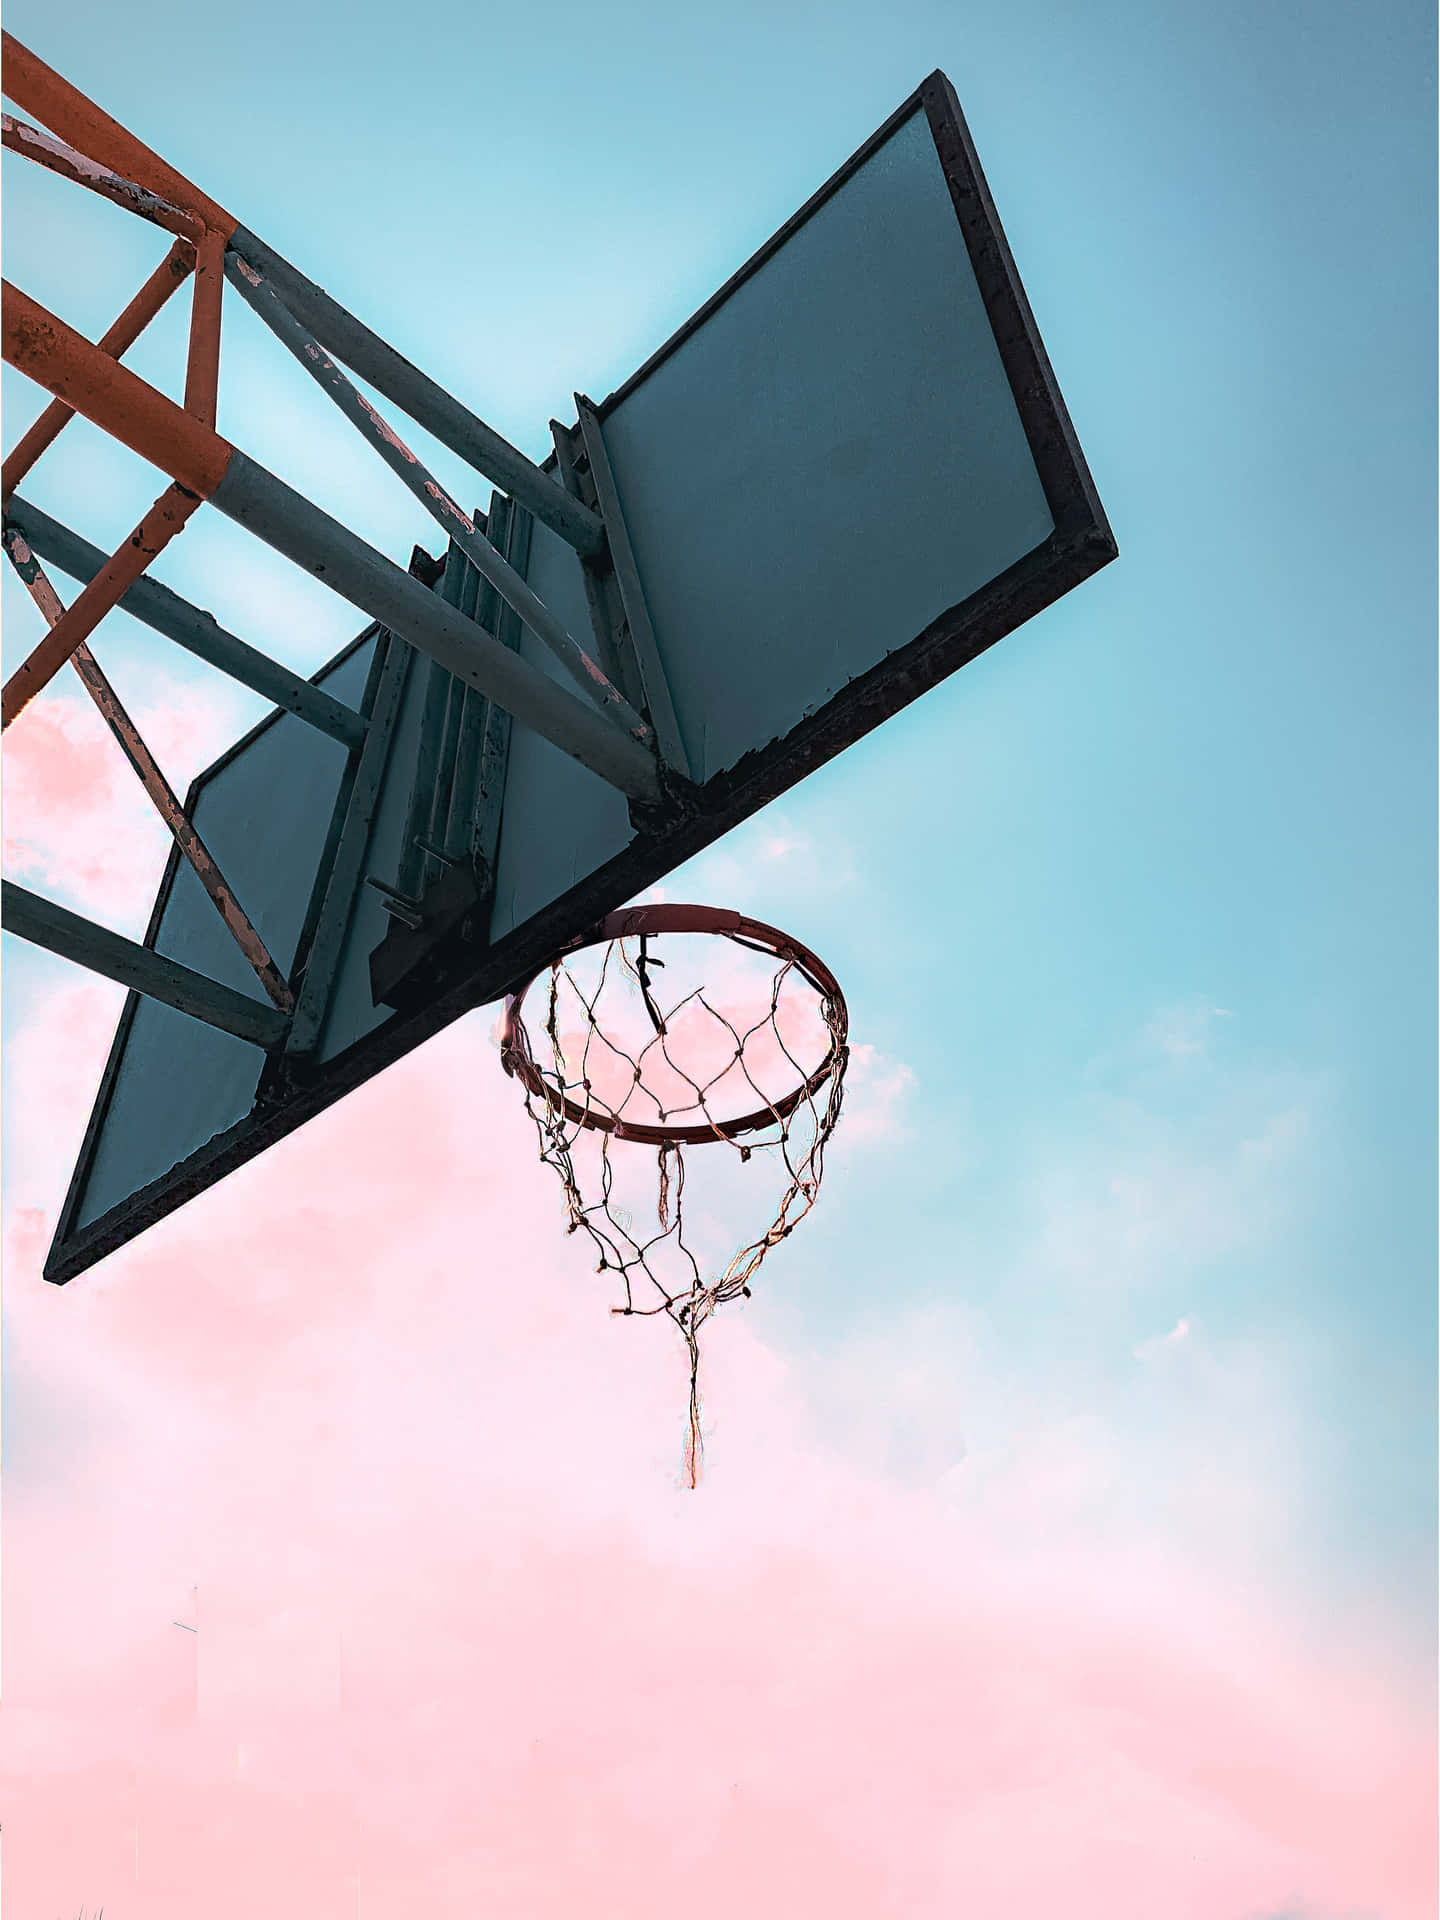 Basketball Hoop Against Pink Sky Wallpaper